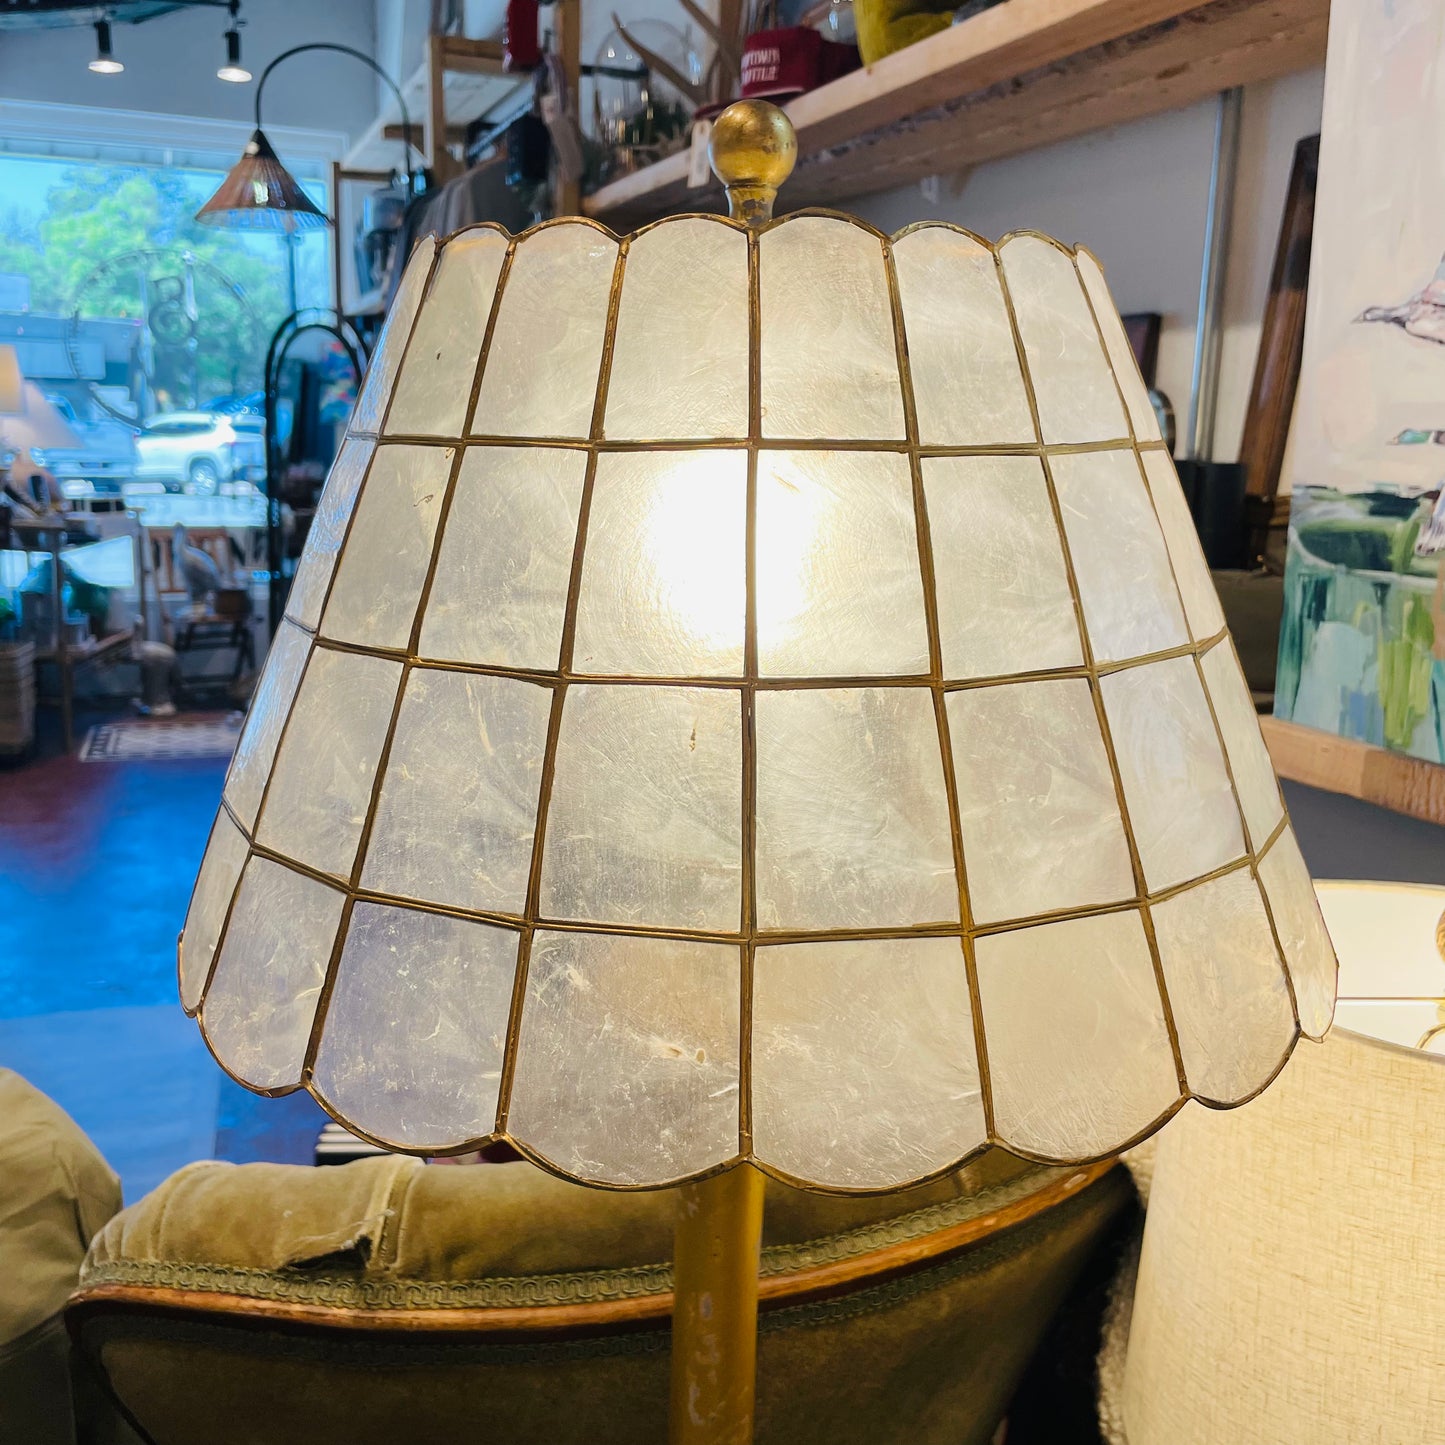 Leland Table Lamp